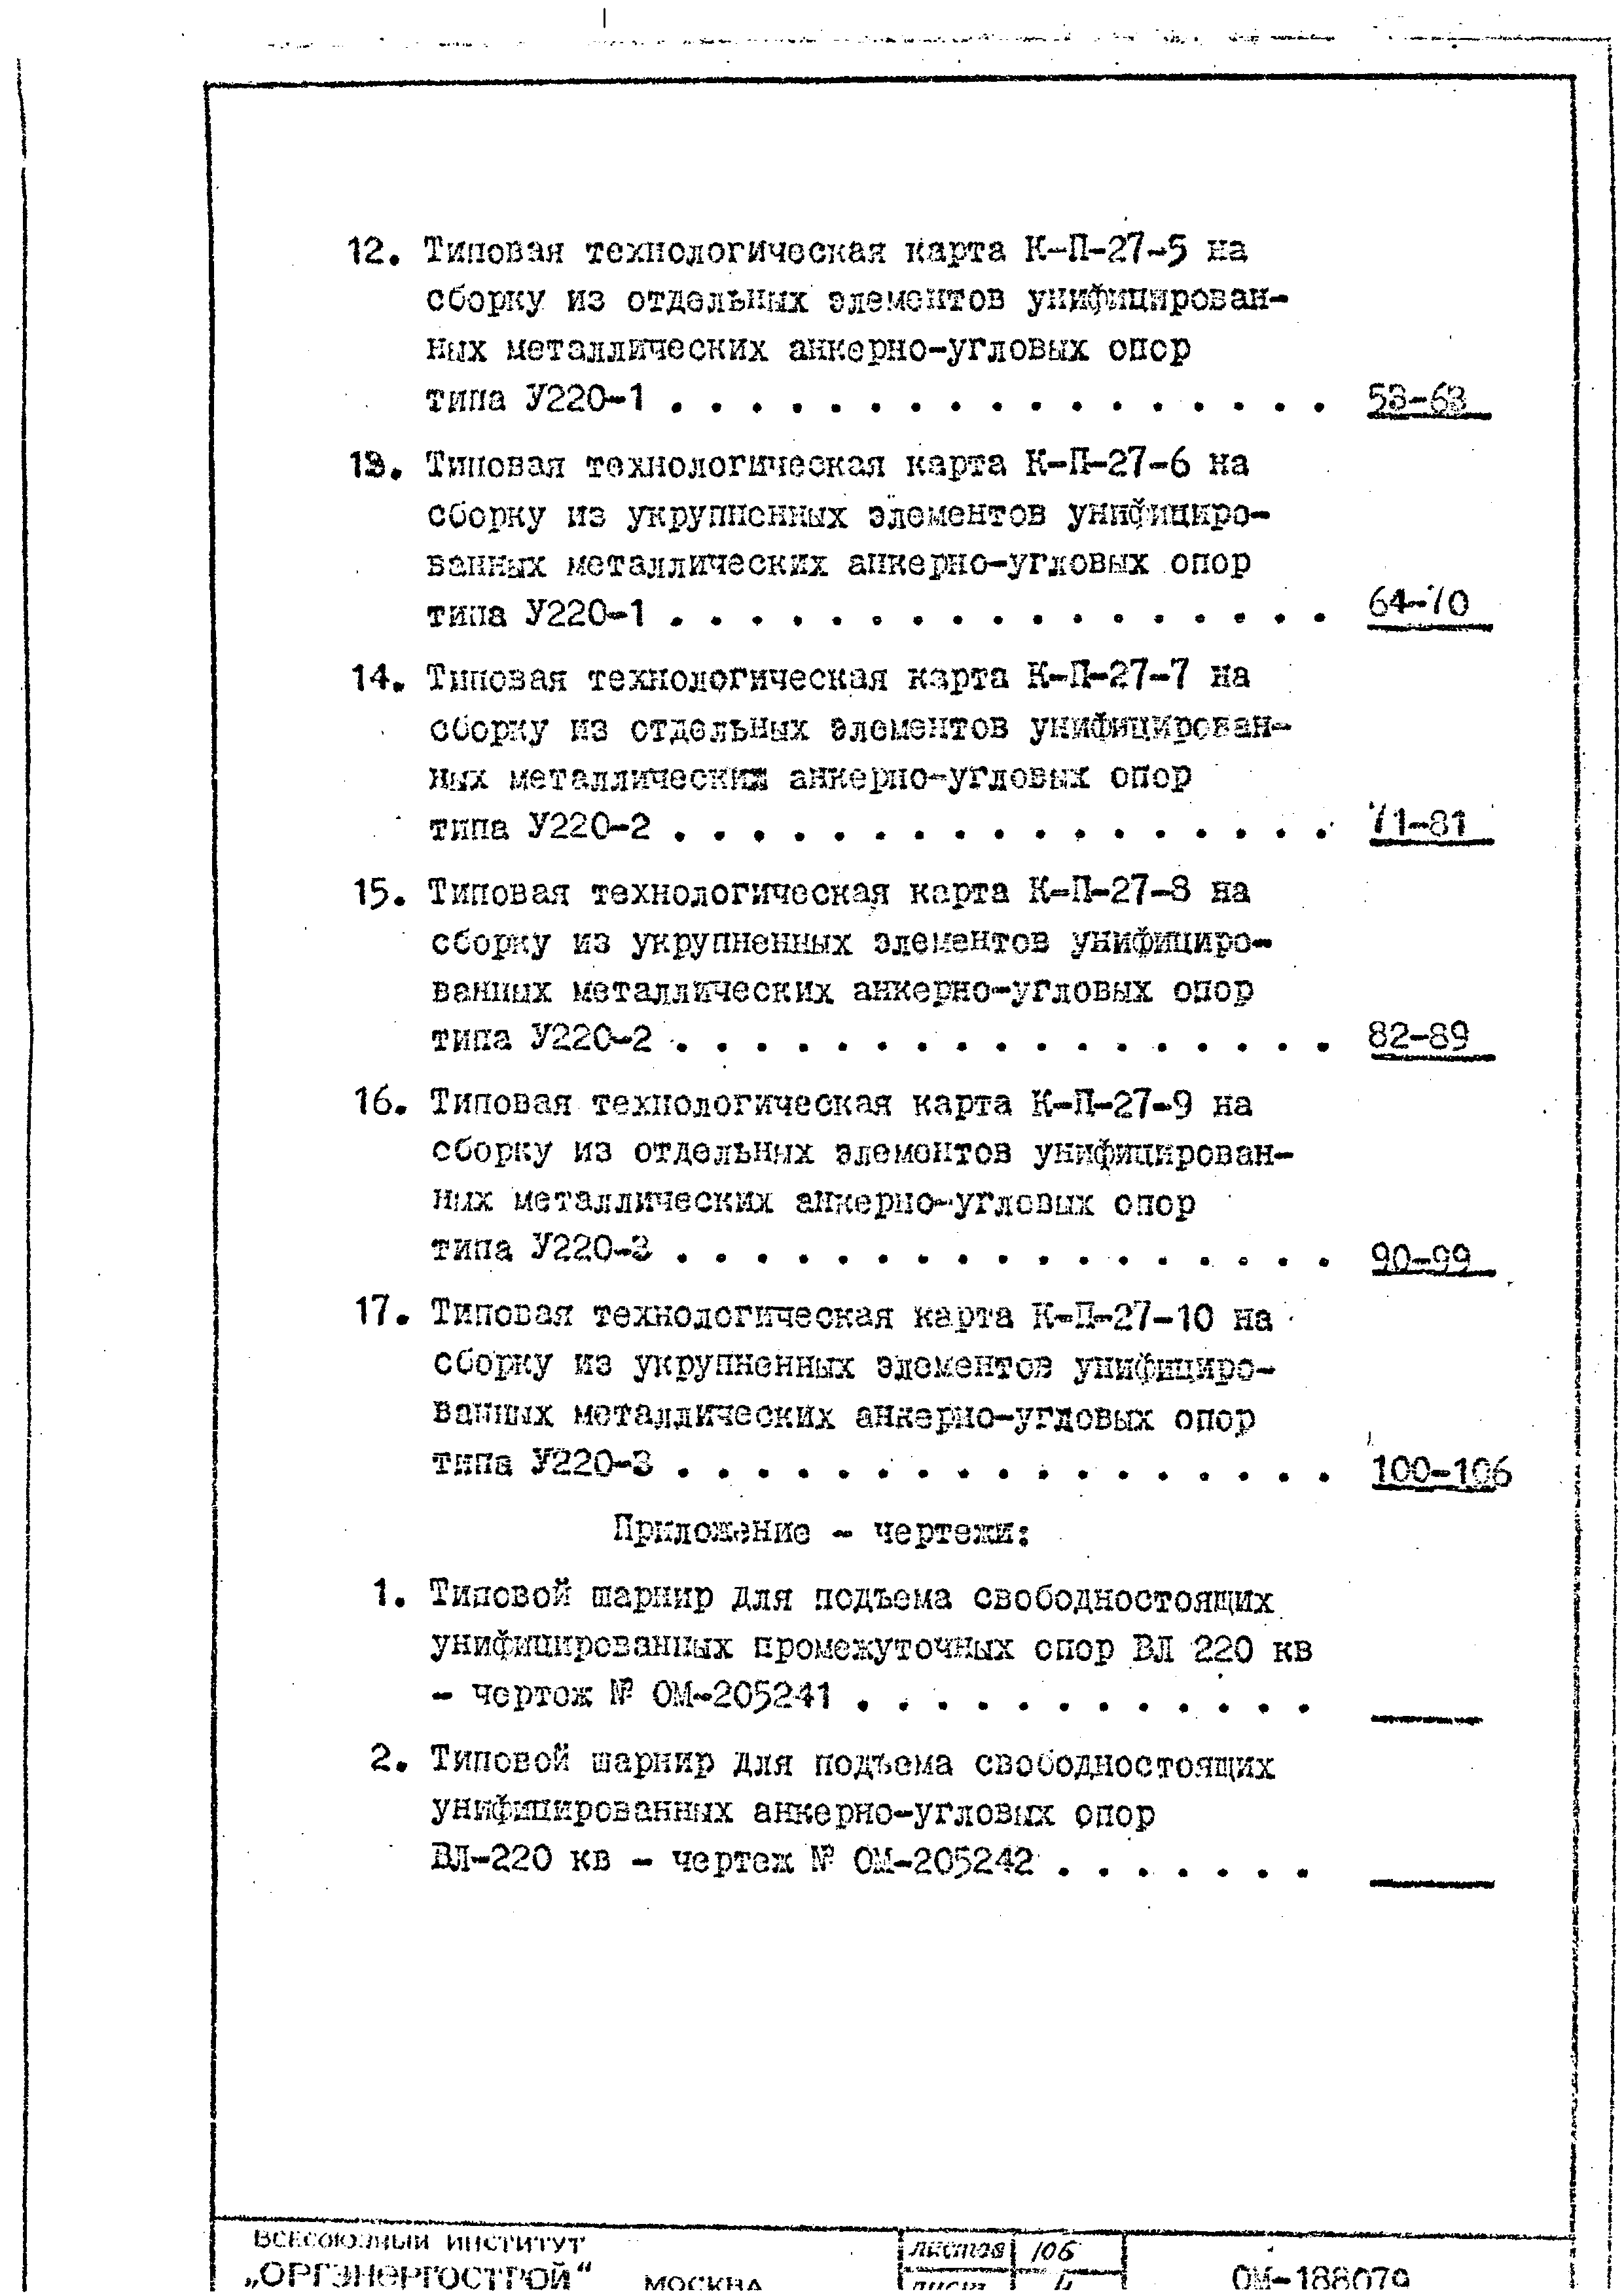 ТТК К-II-27-9